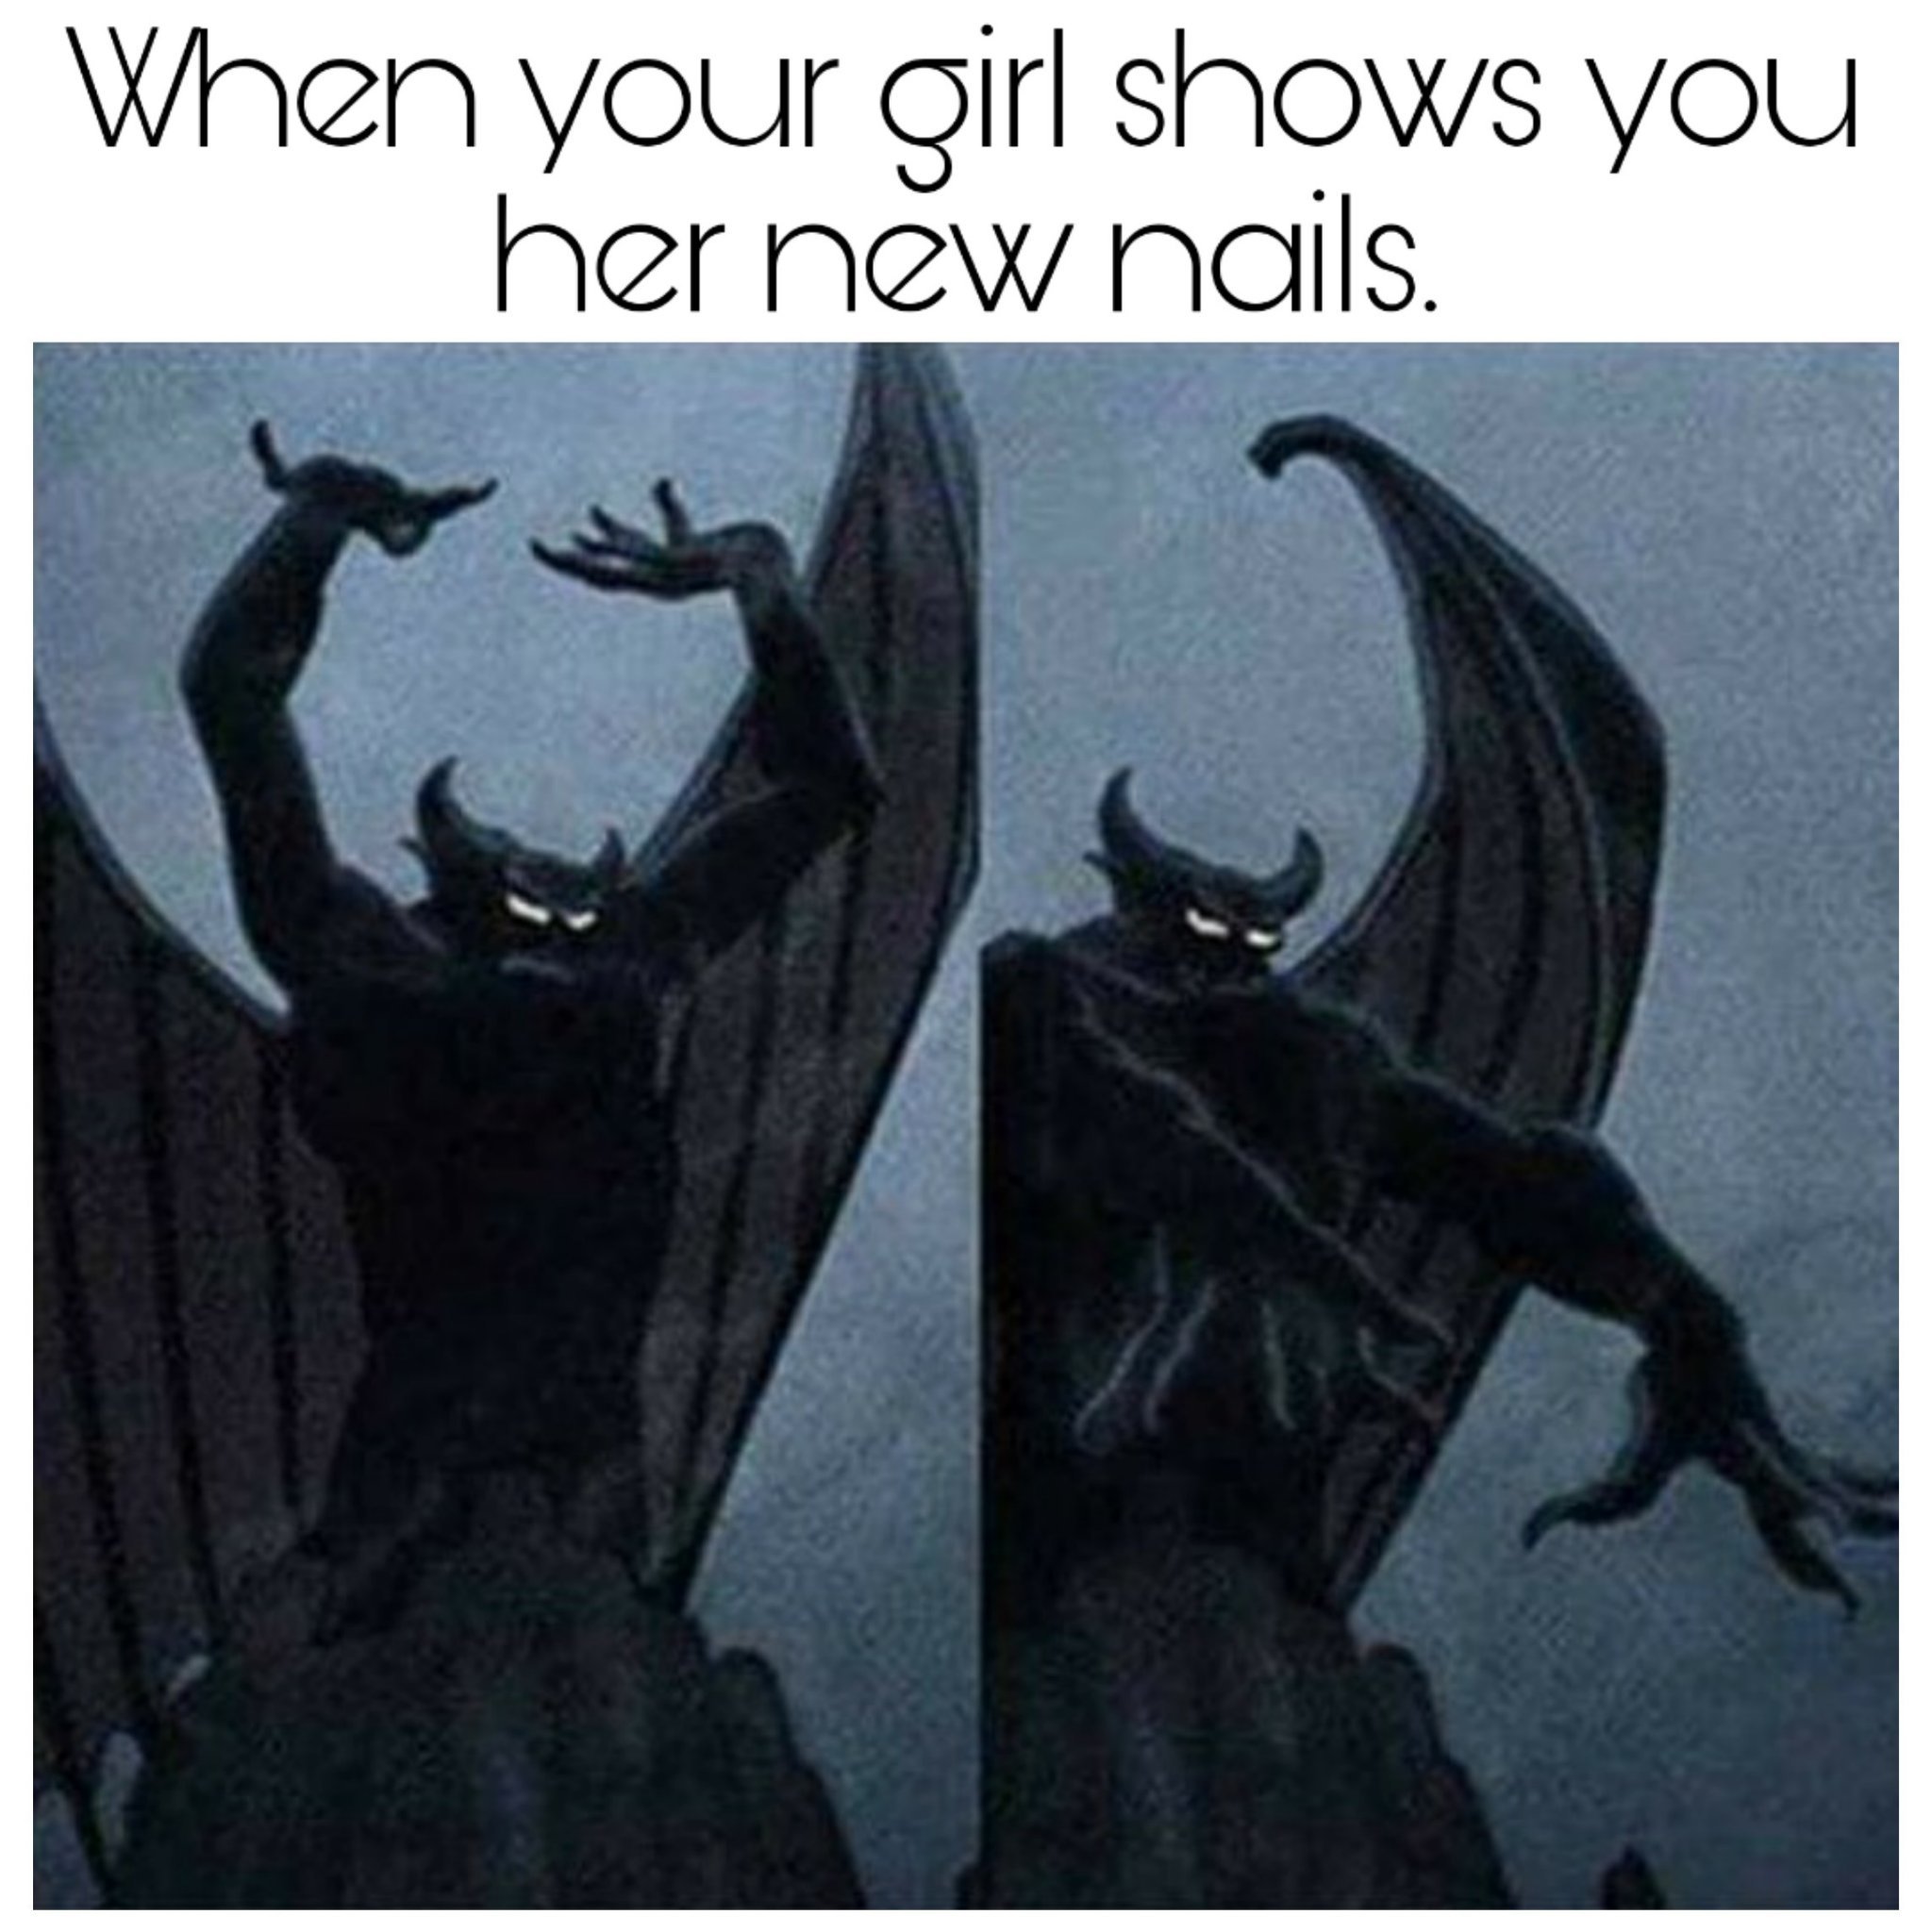 New nails - meme